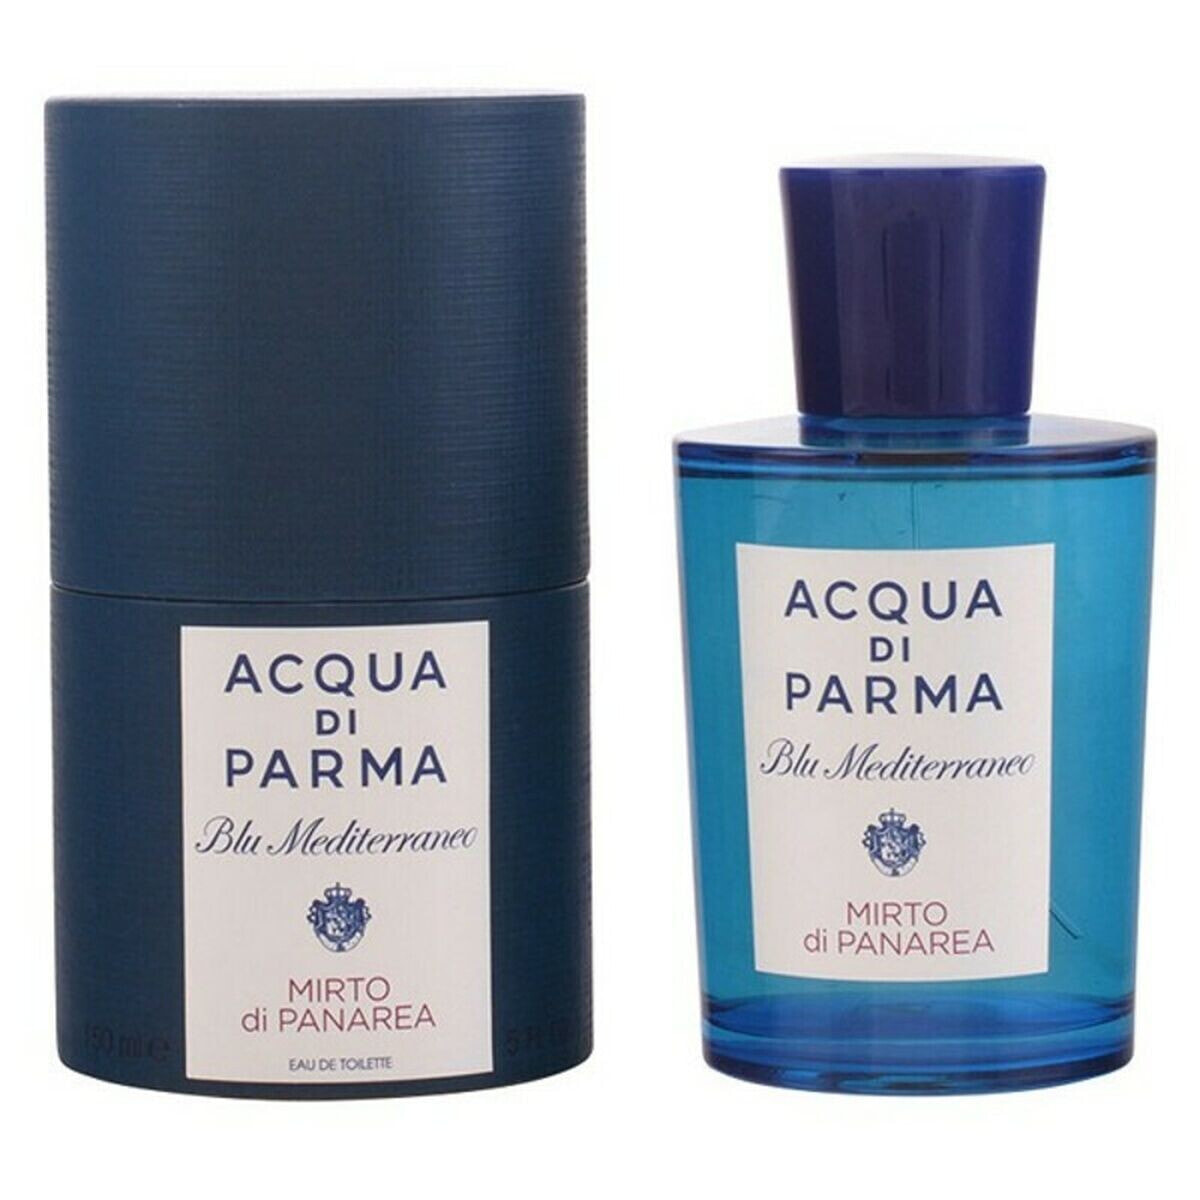 Unisex Perfume Acqua Di Parma EDT Blu Mediterraneo Mirto Di Panarea 150 ml